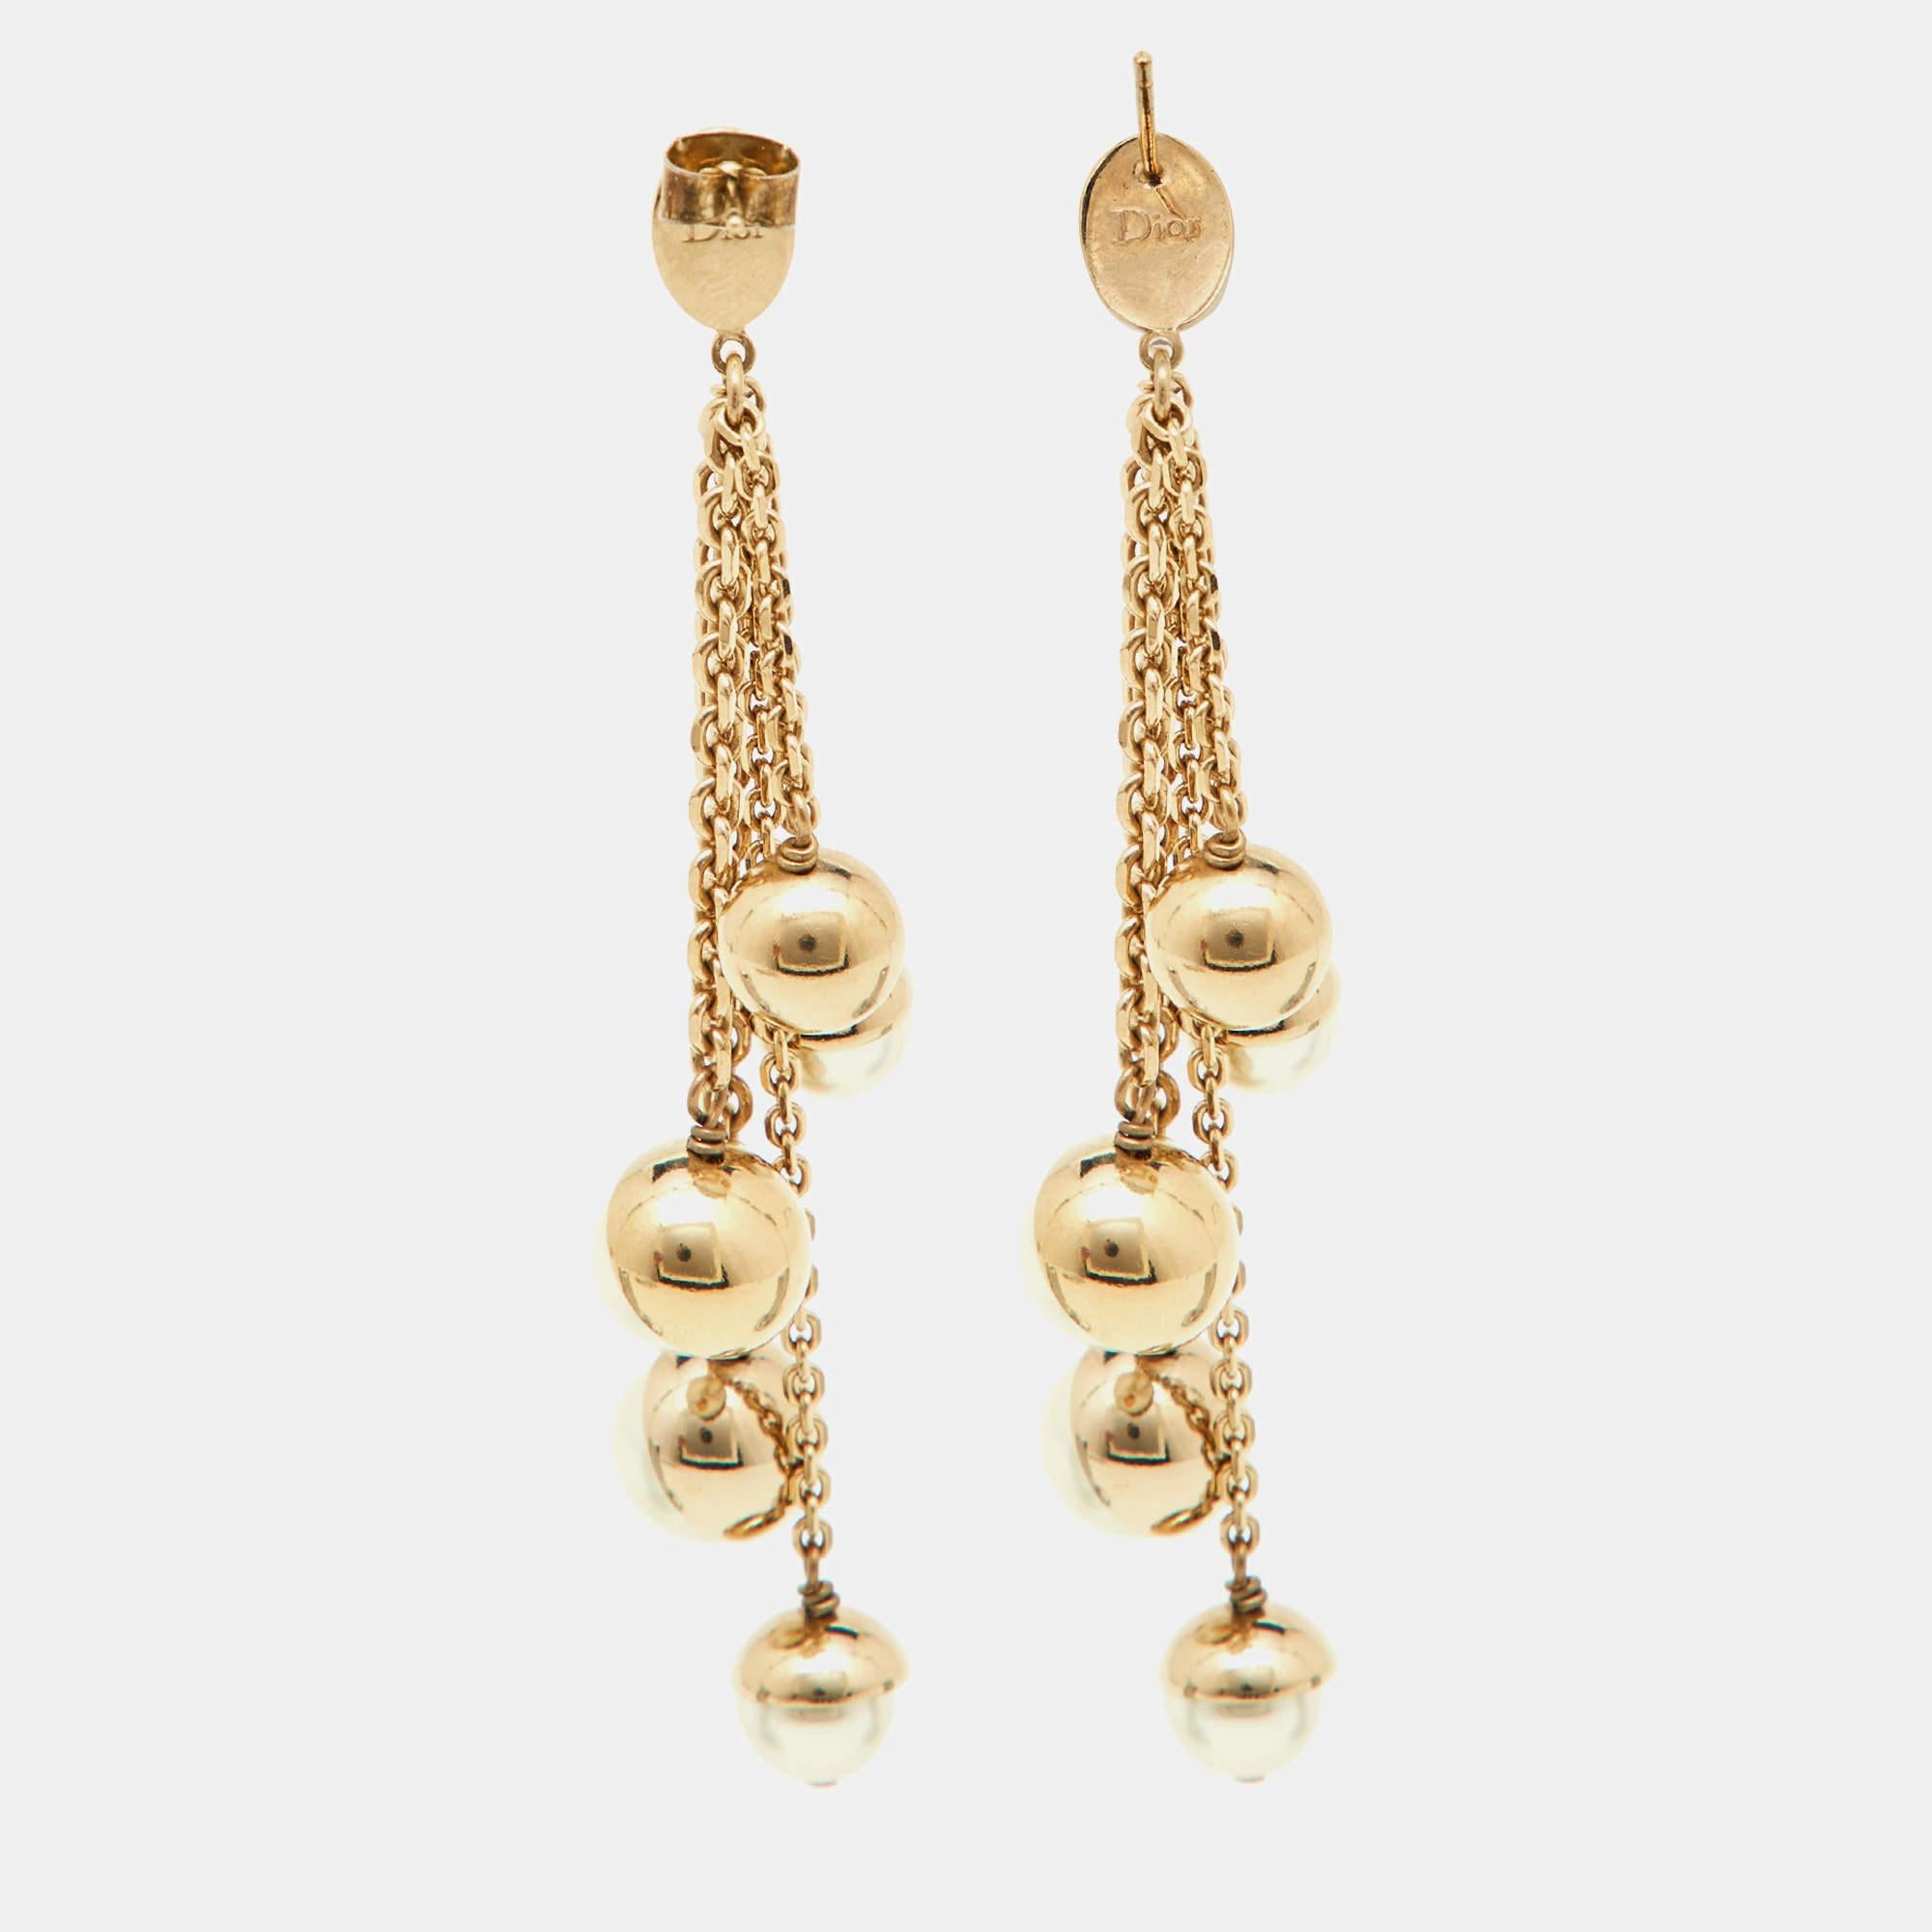 Dieses Paar Tropfenohrringe von Dior ist ein Accessoire, das Sie Saison für Saison tragen werden. Dieses Modell aus goldfarbenem Metall mit Perlenimitaten ist eine lohnende Investition.

